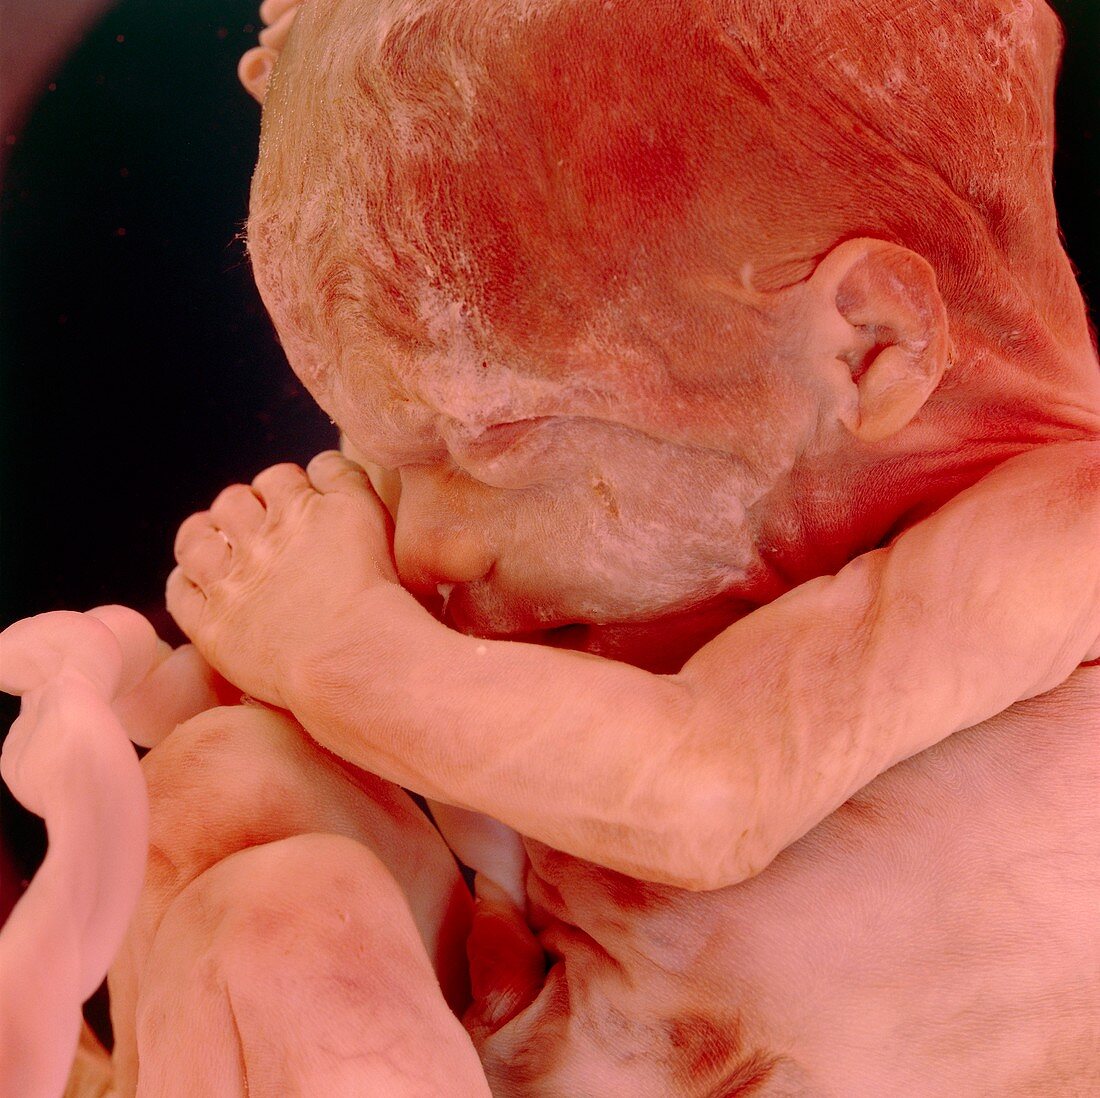 Foetus aged 15 weeks